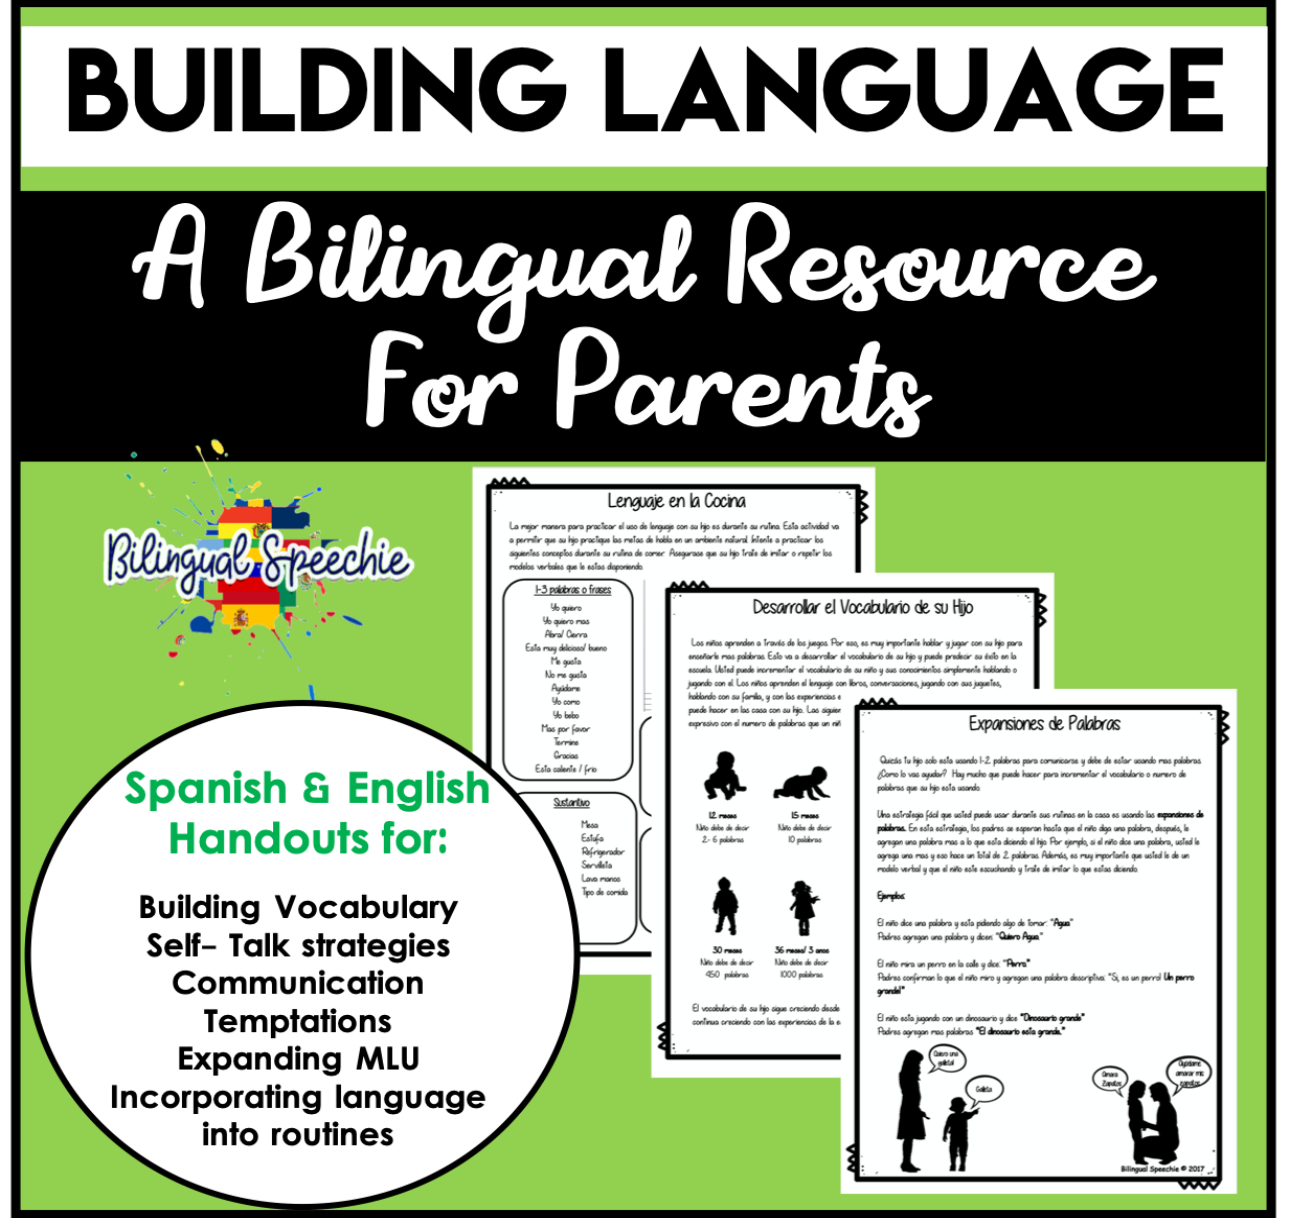 Building Language | Bilingual (Spanish & English) Handouts for Parents